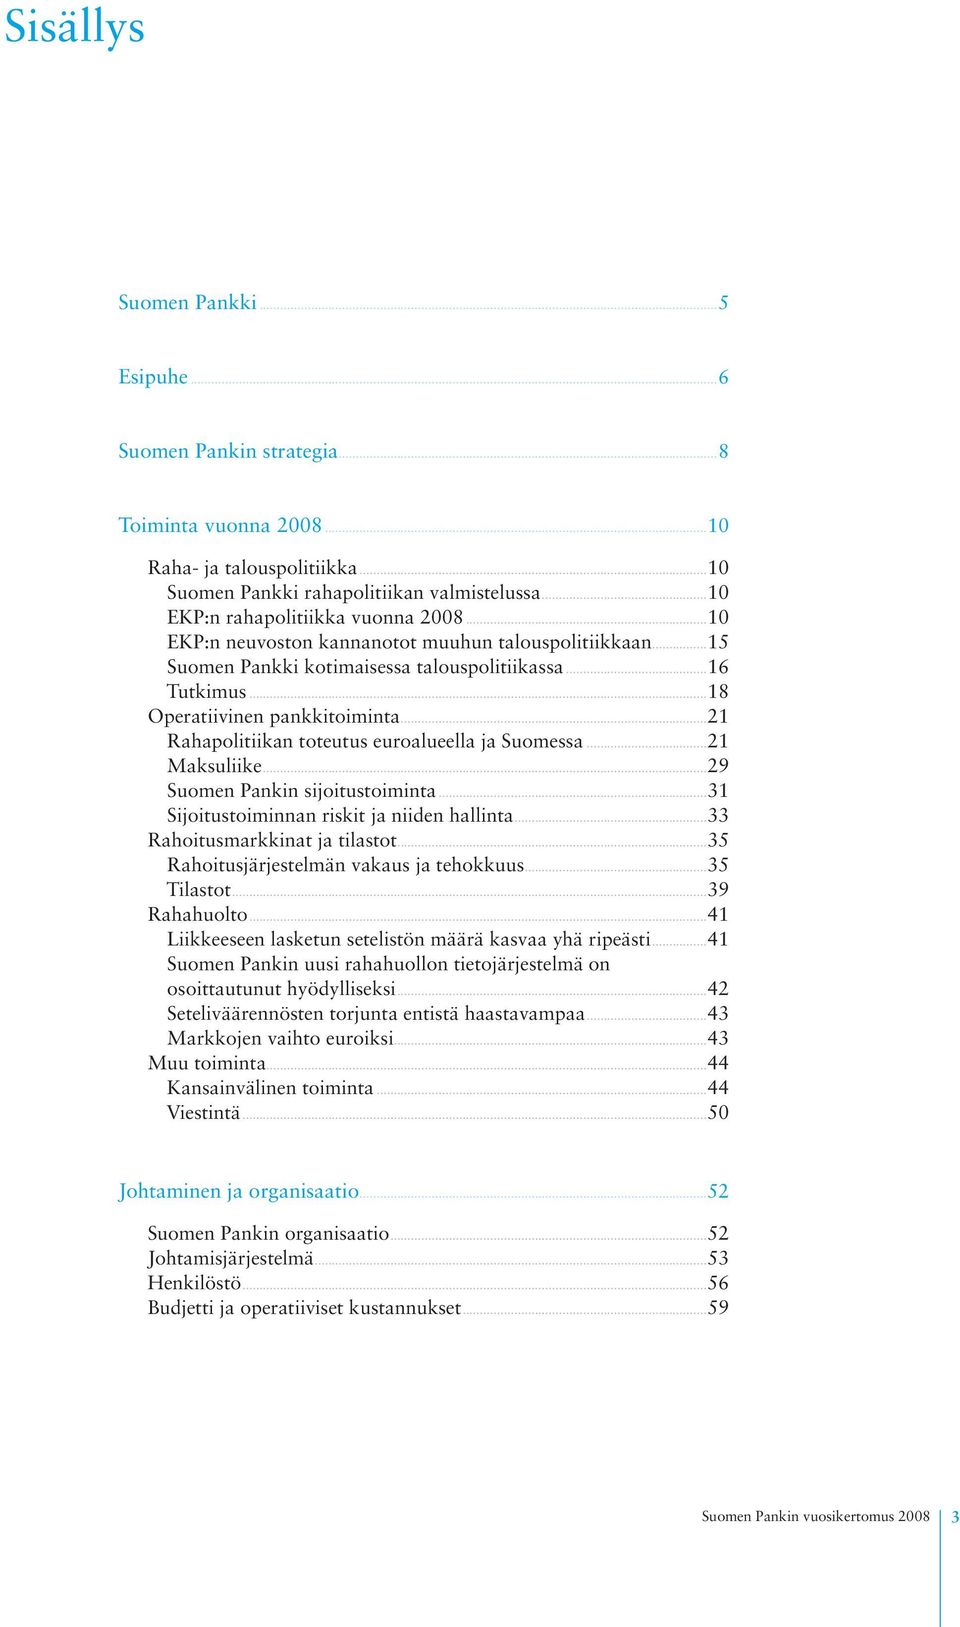 ..21 Rahapolitiikan toteutus euroalueella ja Suomessa...21 Maksuliike...29 Suomen Pankin sijoitustoiminta...31 Sijoitustoiminnan riskit ja niiden hallinta...33 Rahoitusmarkkinat ja tilastot.